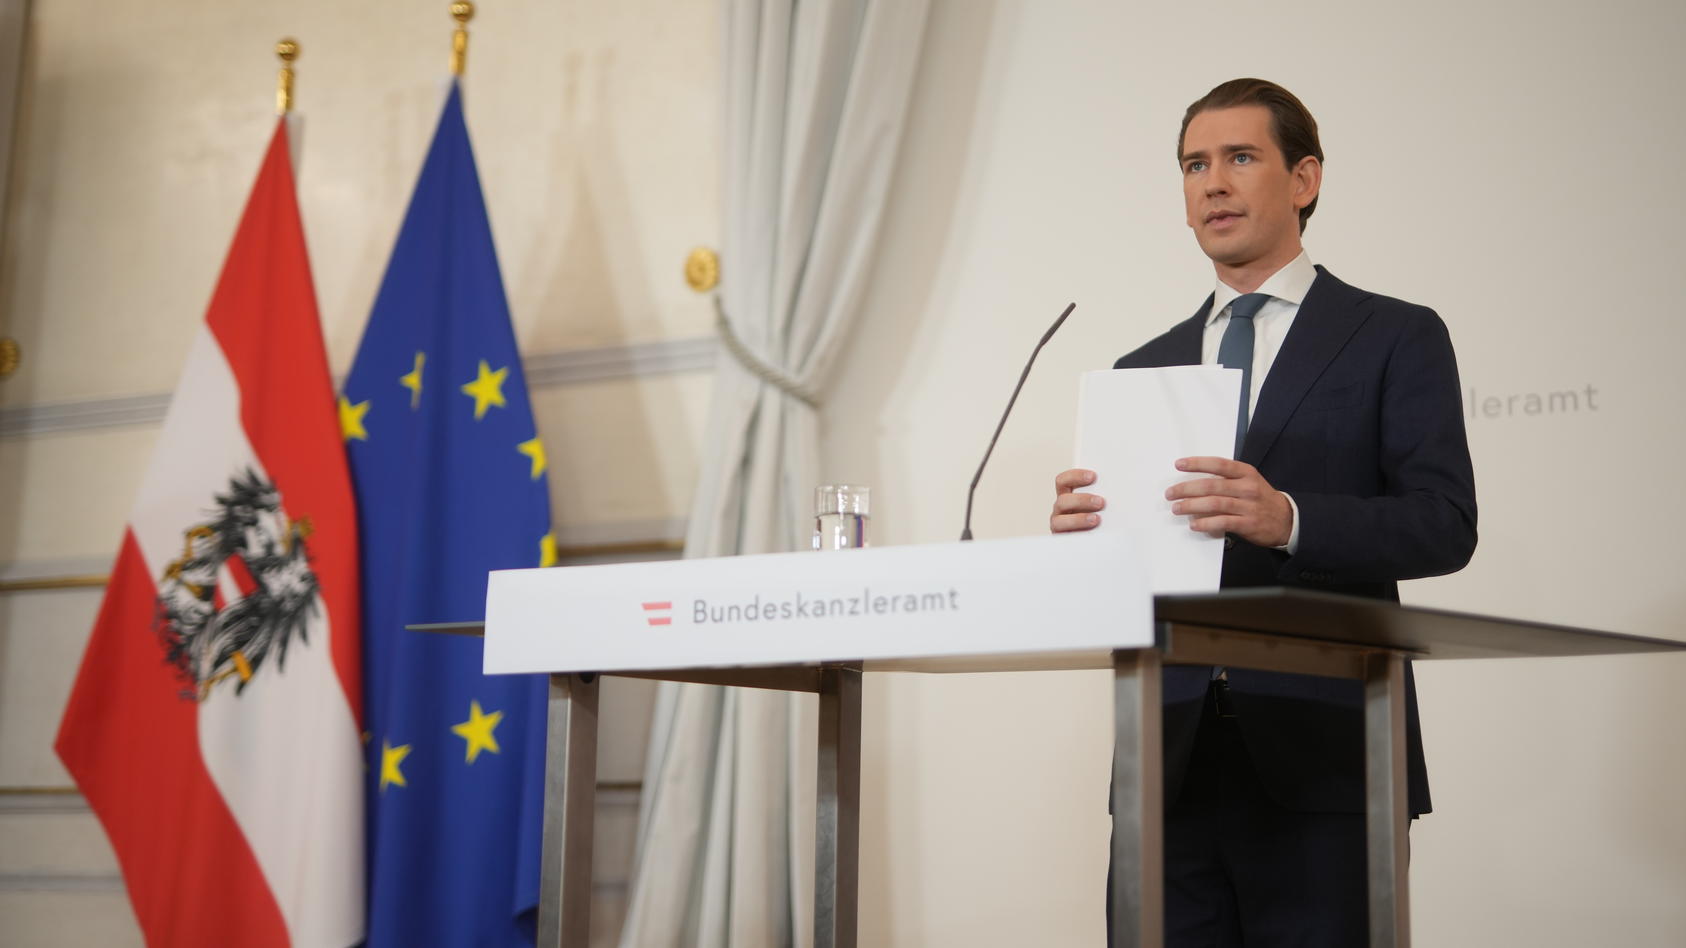 Sebastian Kurz ist nach den anhaltenden Korruptionsvorwürfen gegen seine Person von seinem Amt als Bundeskanzler von Österreich zurückgetreten.